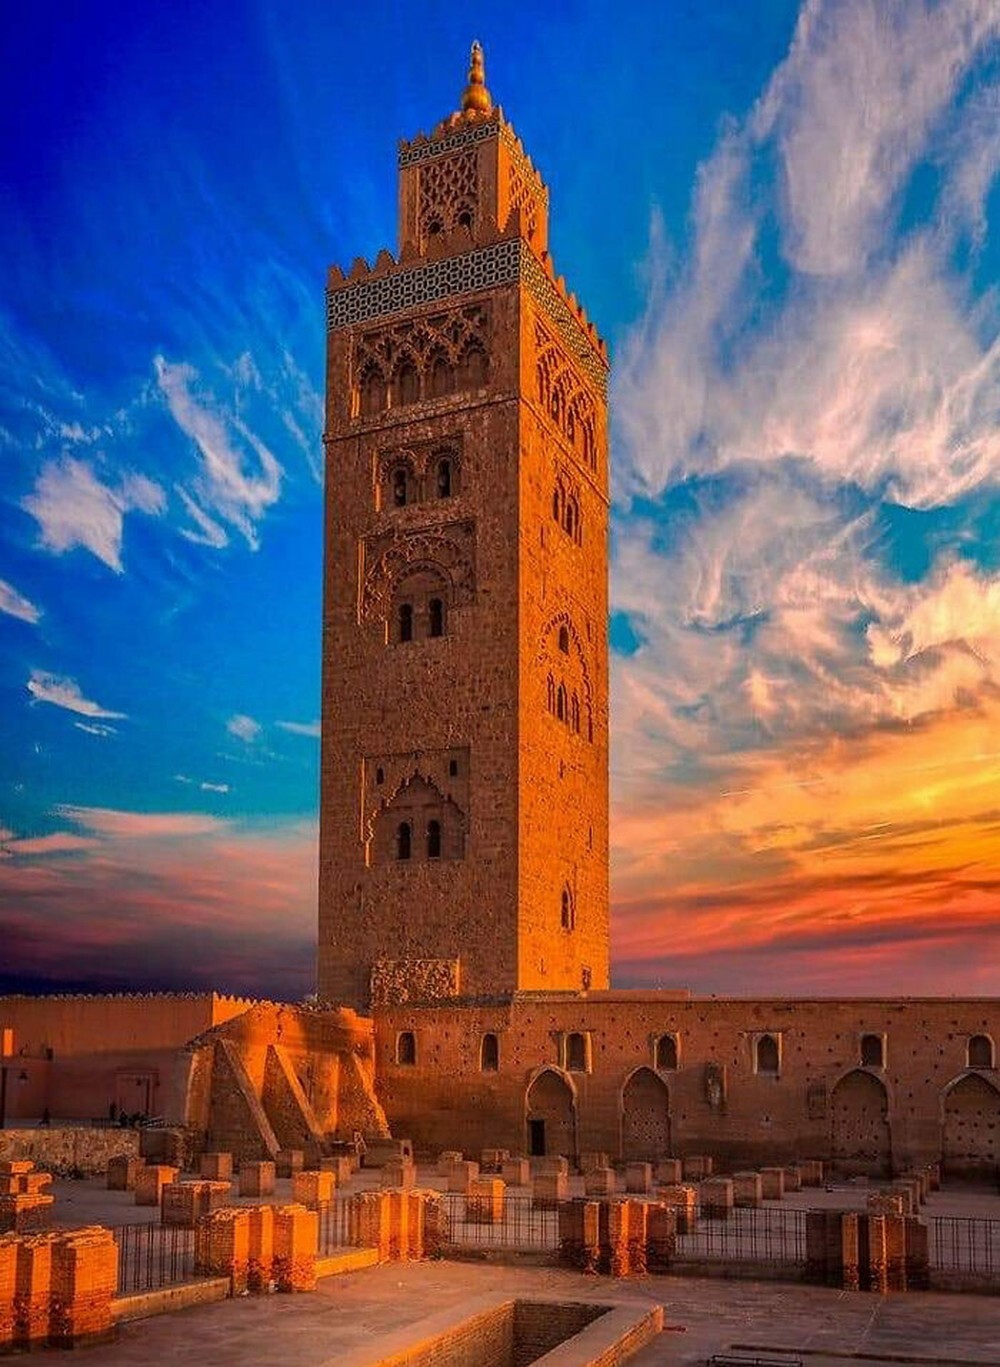 25. Мечеть Кутубия, одна из главных культурных и религиозных достопримечательностей Марракеша и Королевства Марокко